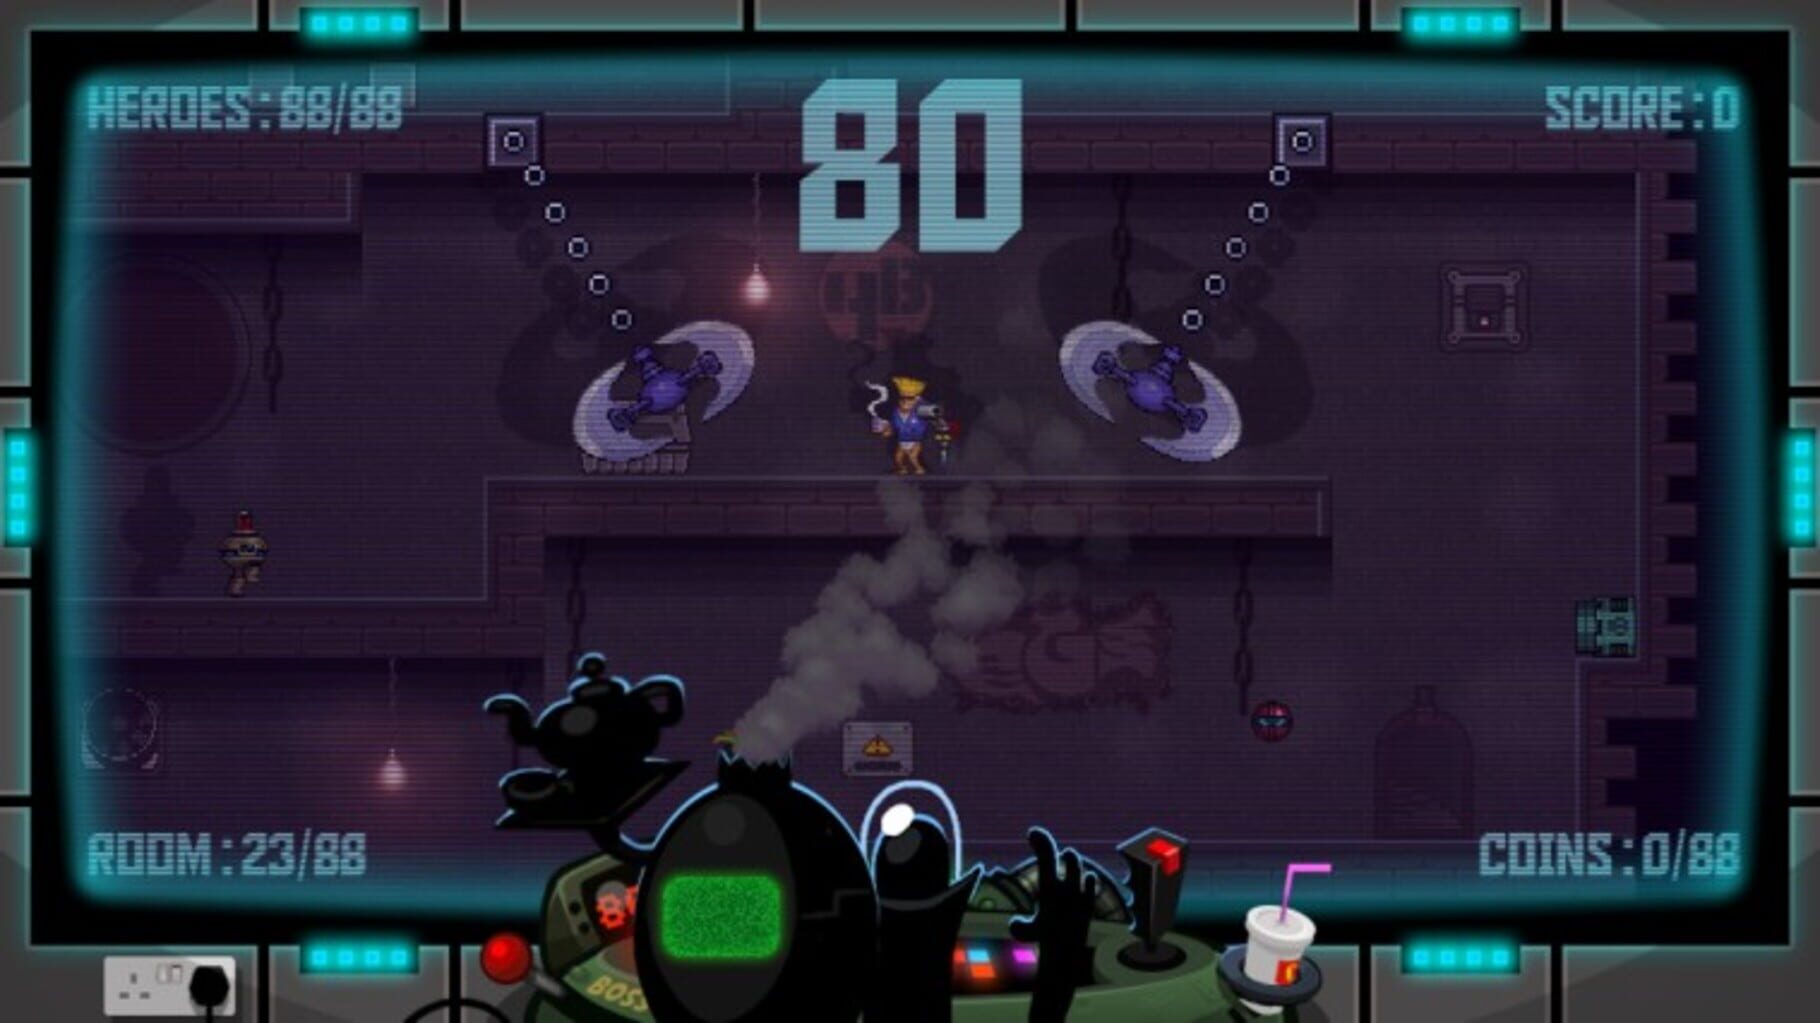 88 Heroes: 98 Heroes Edition screenshot